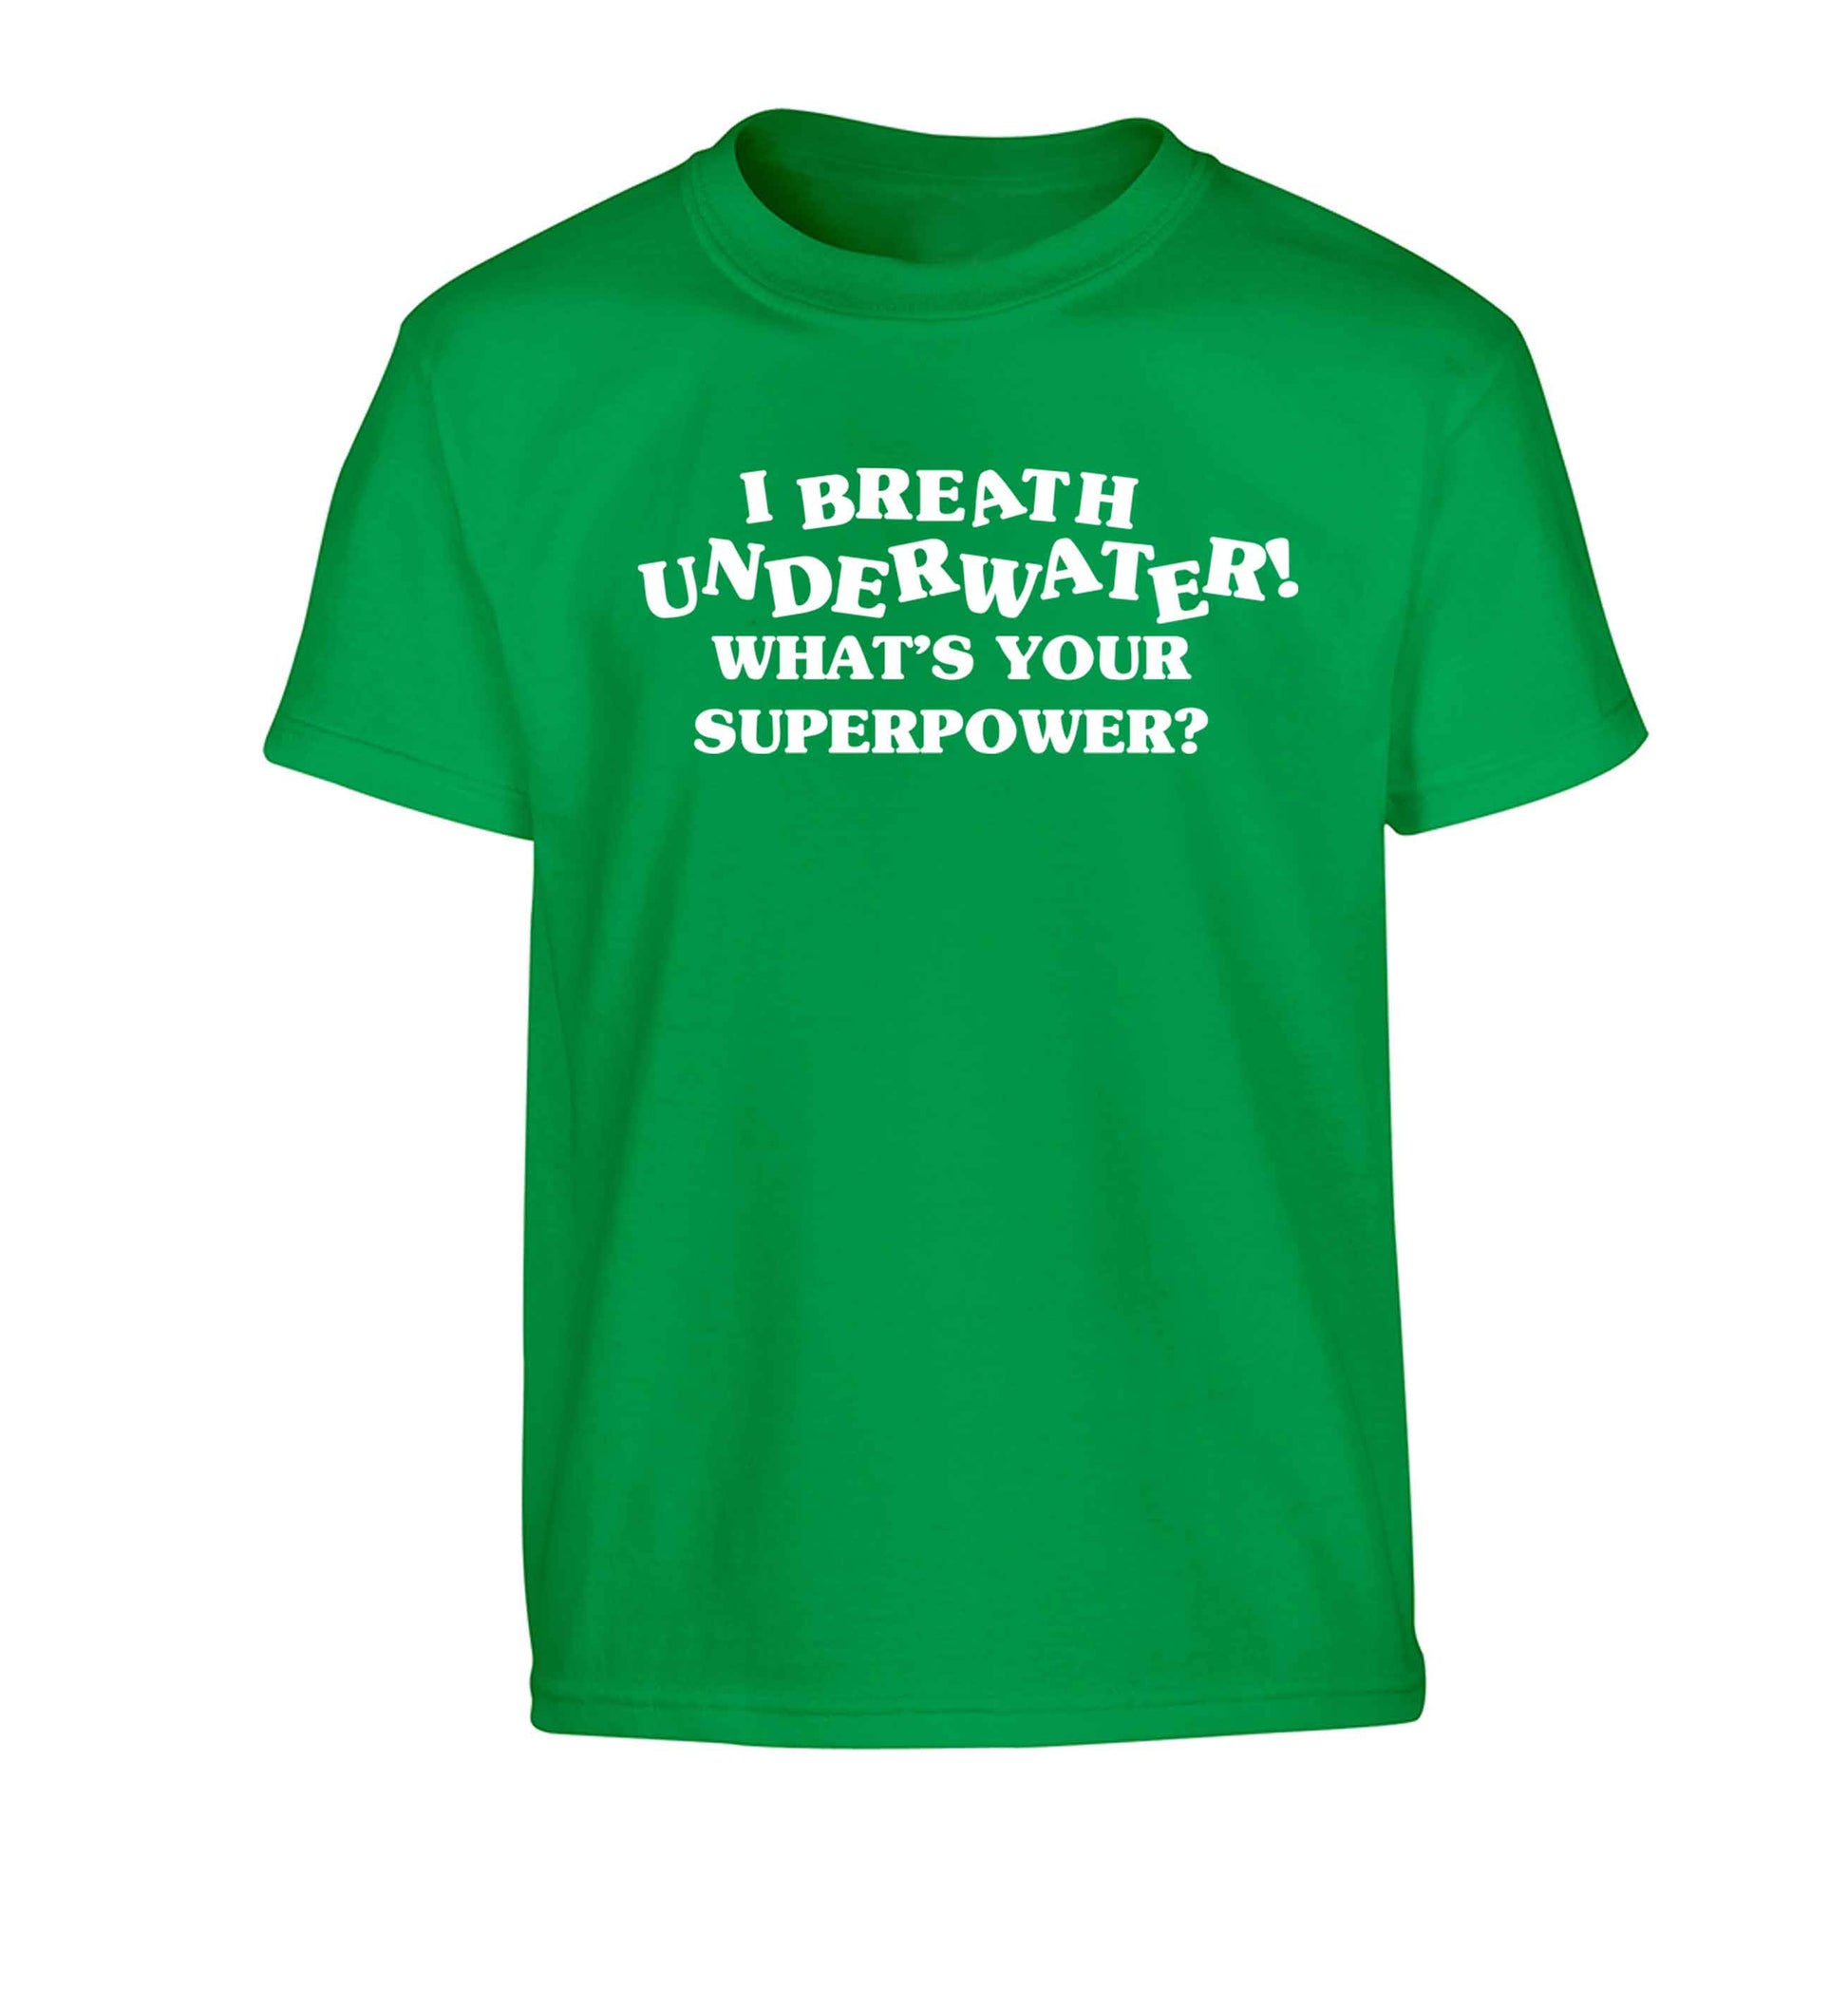 I breath underwater what's your superpower? Children's green Tshirt 12-13 Years